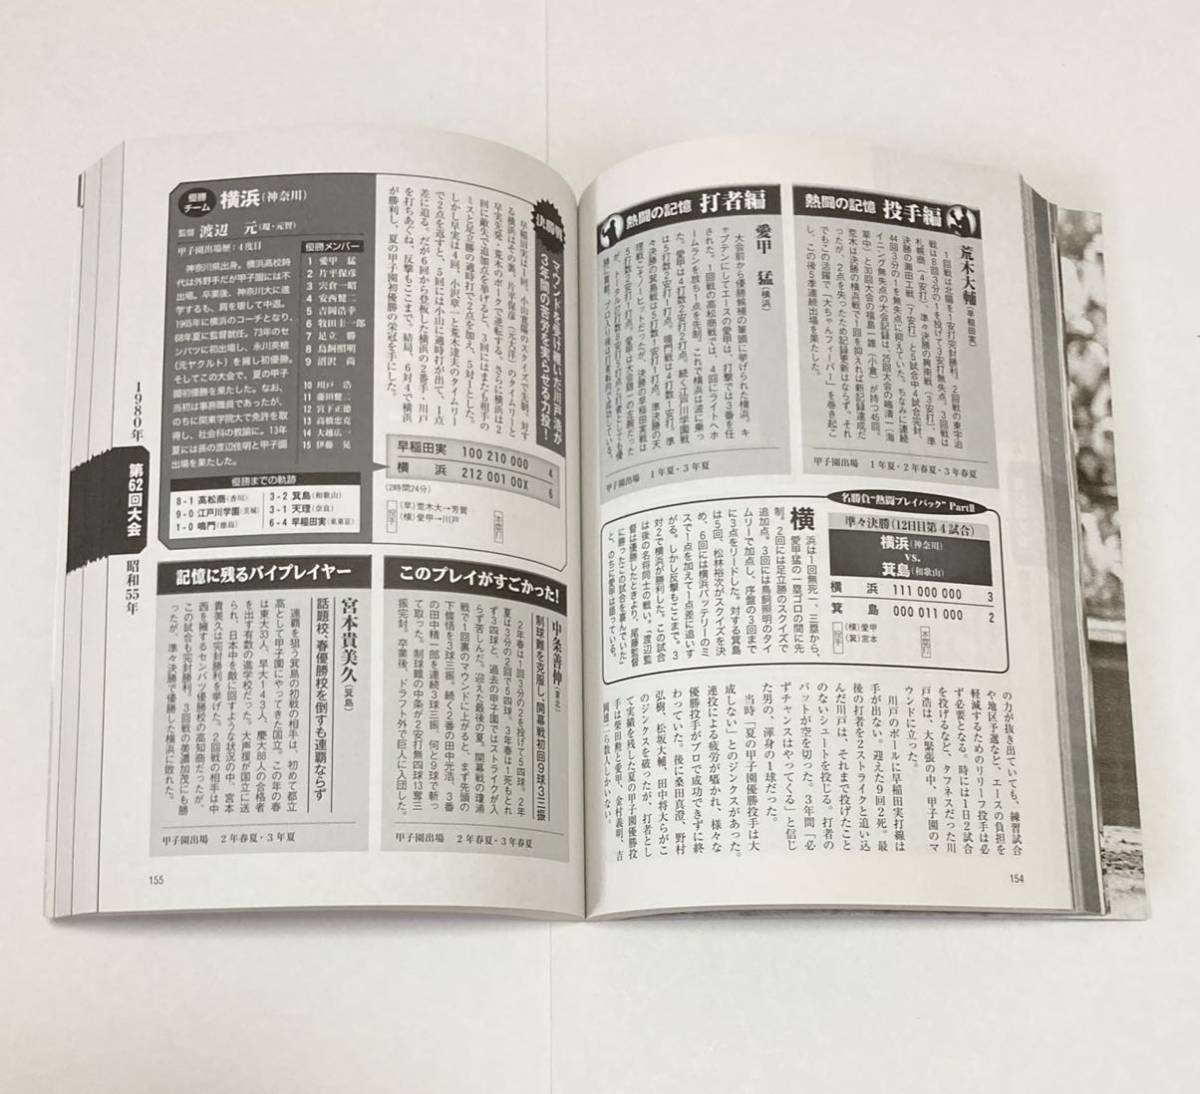 「甲子園出場校大辞典」と「夏の甲子園 完全収録」の2冊